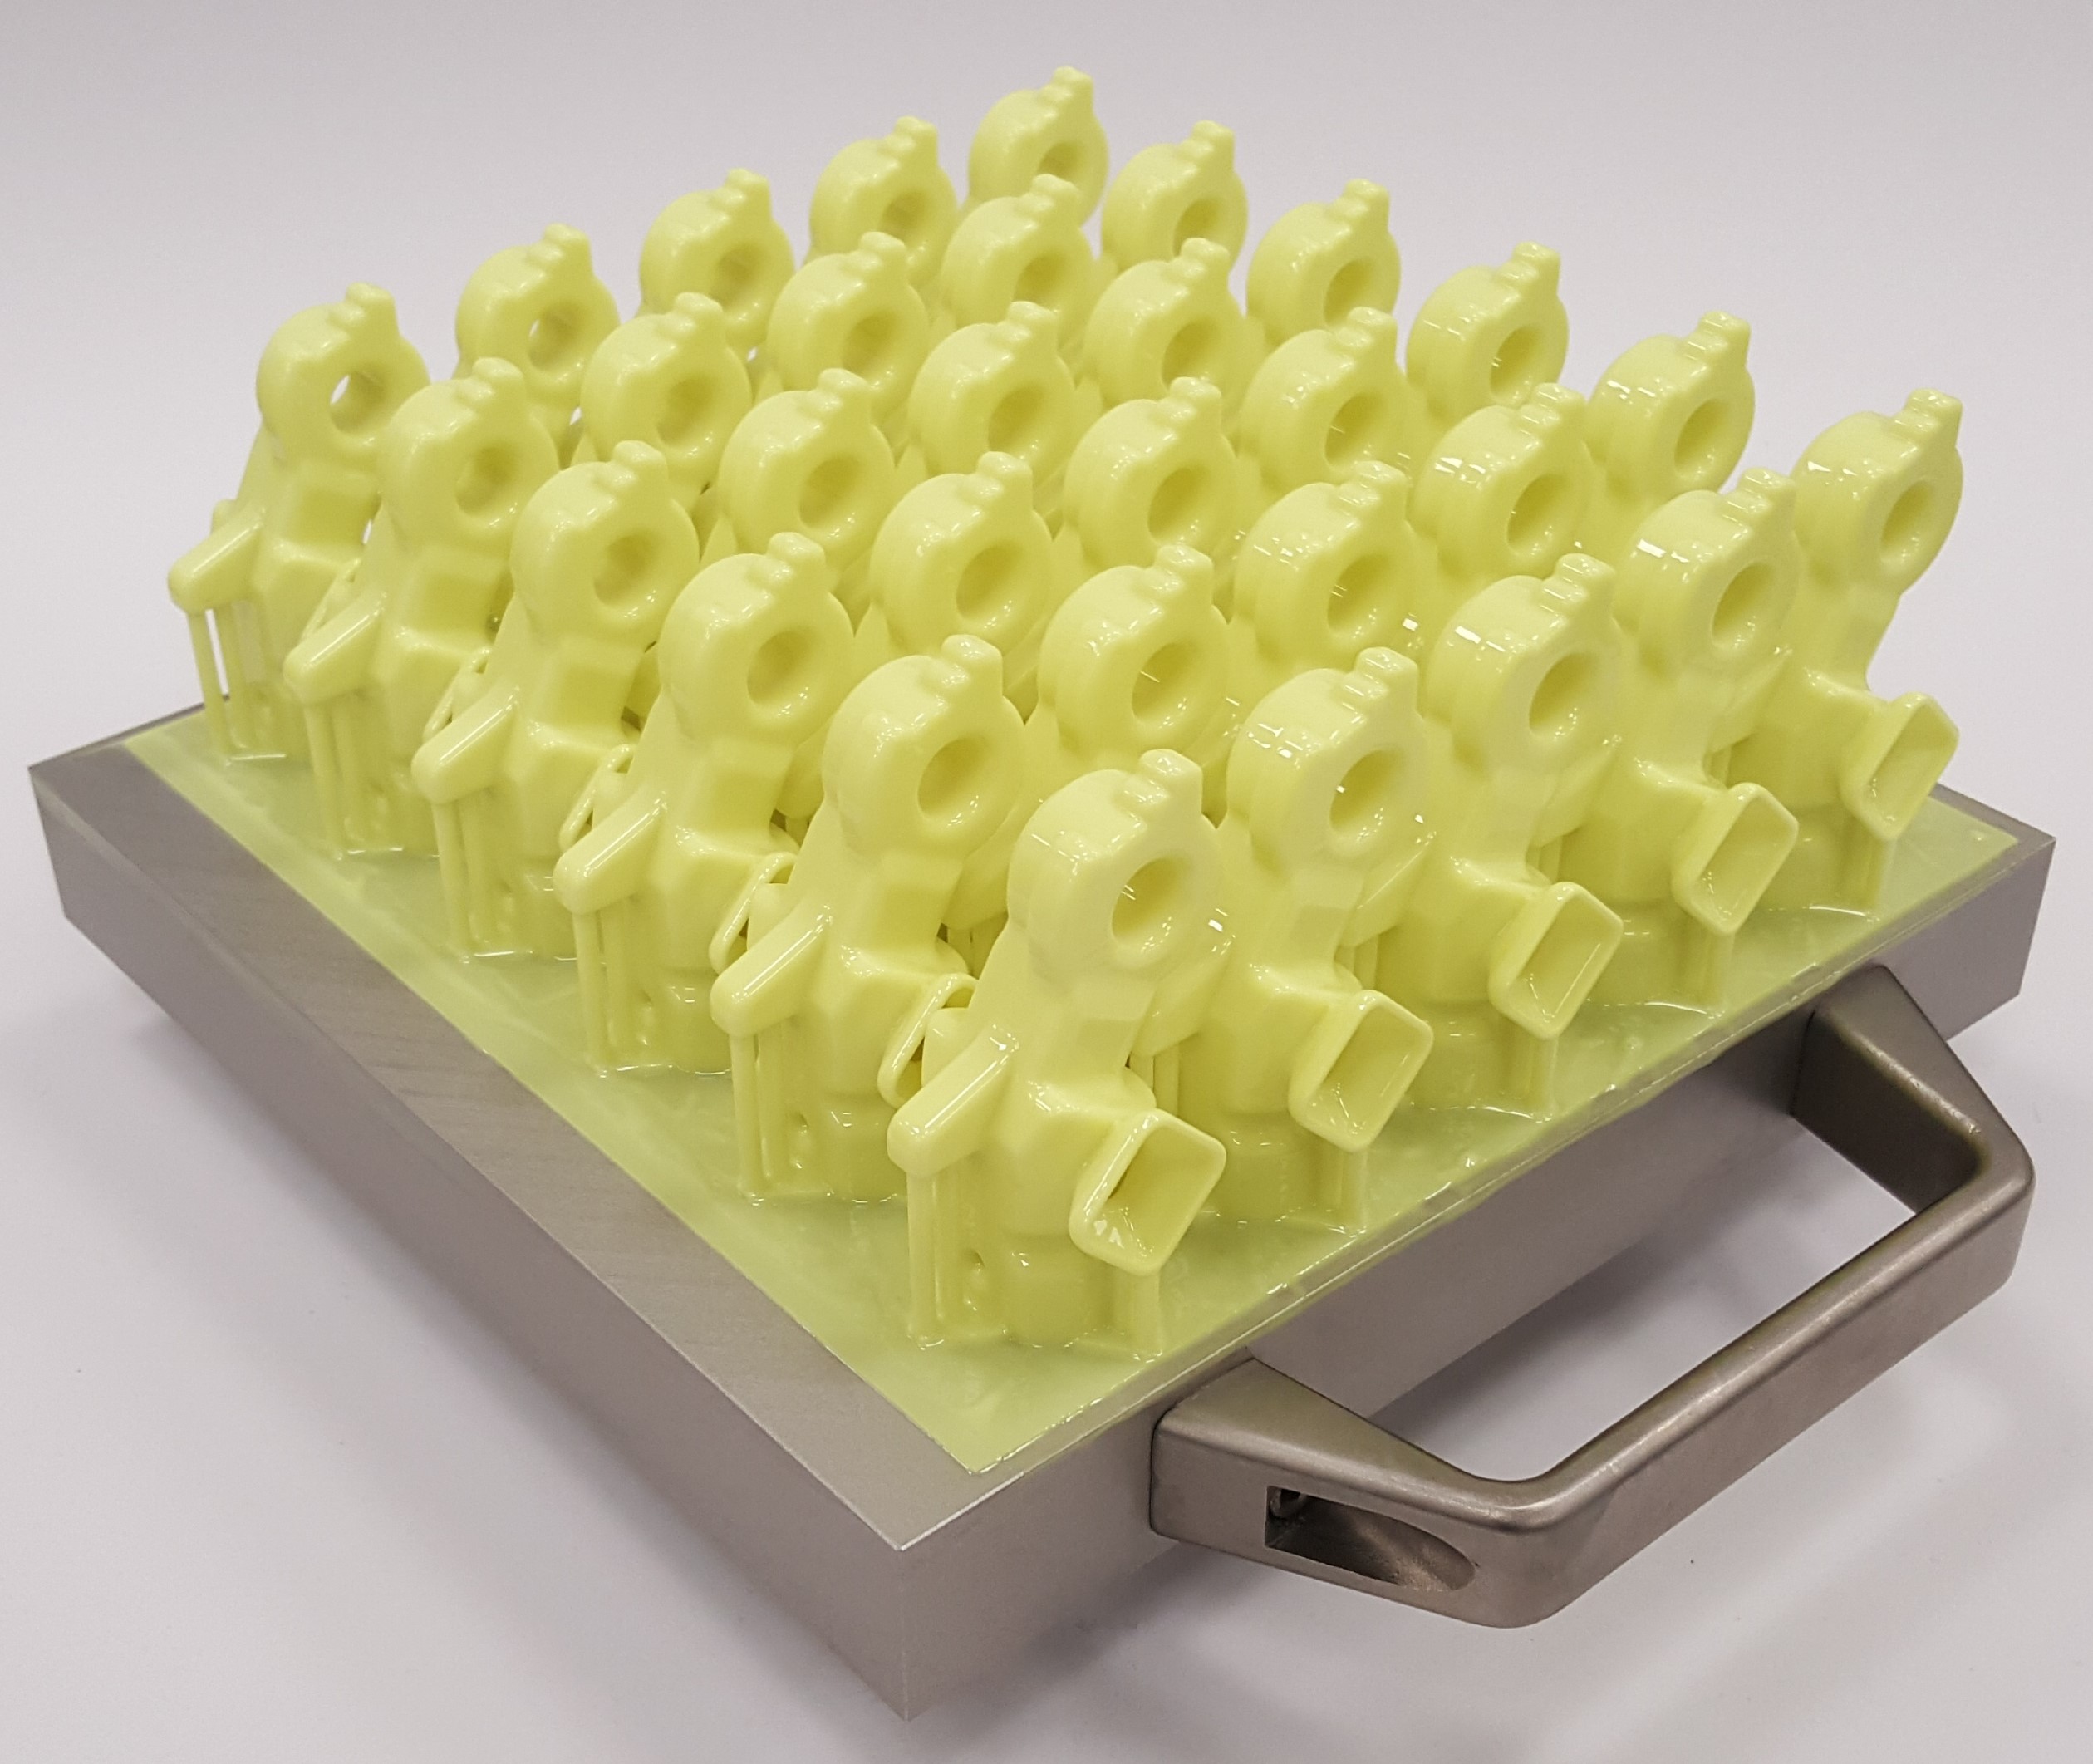 Admaflex300 3D print high throughput